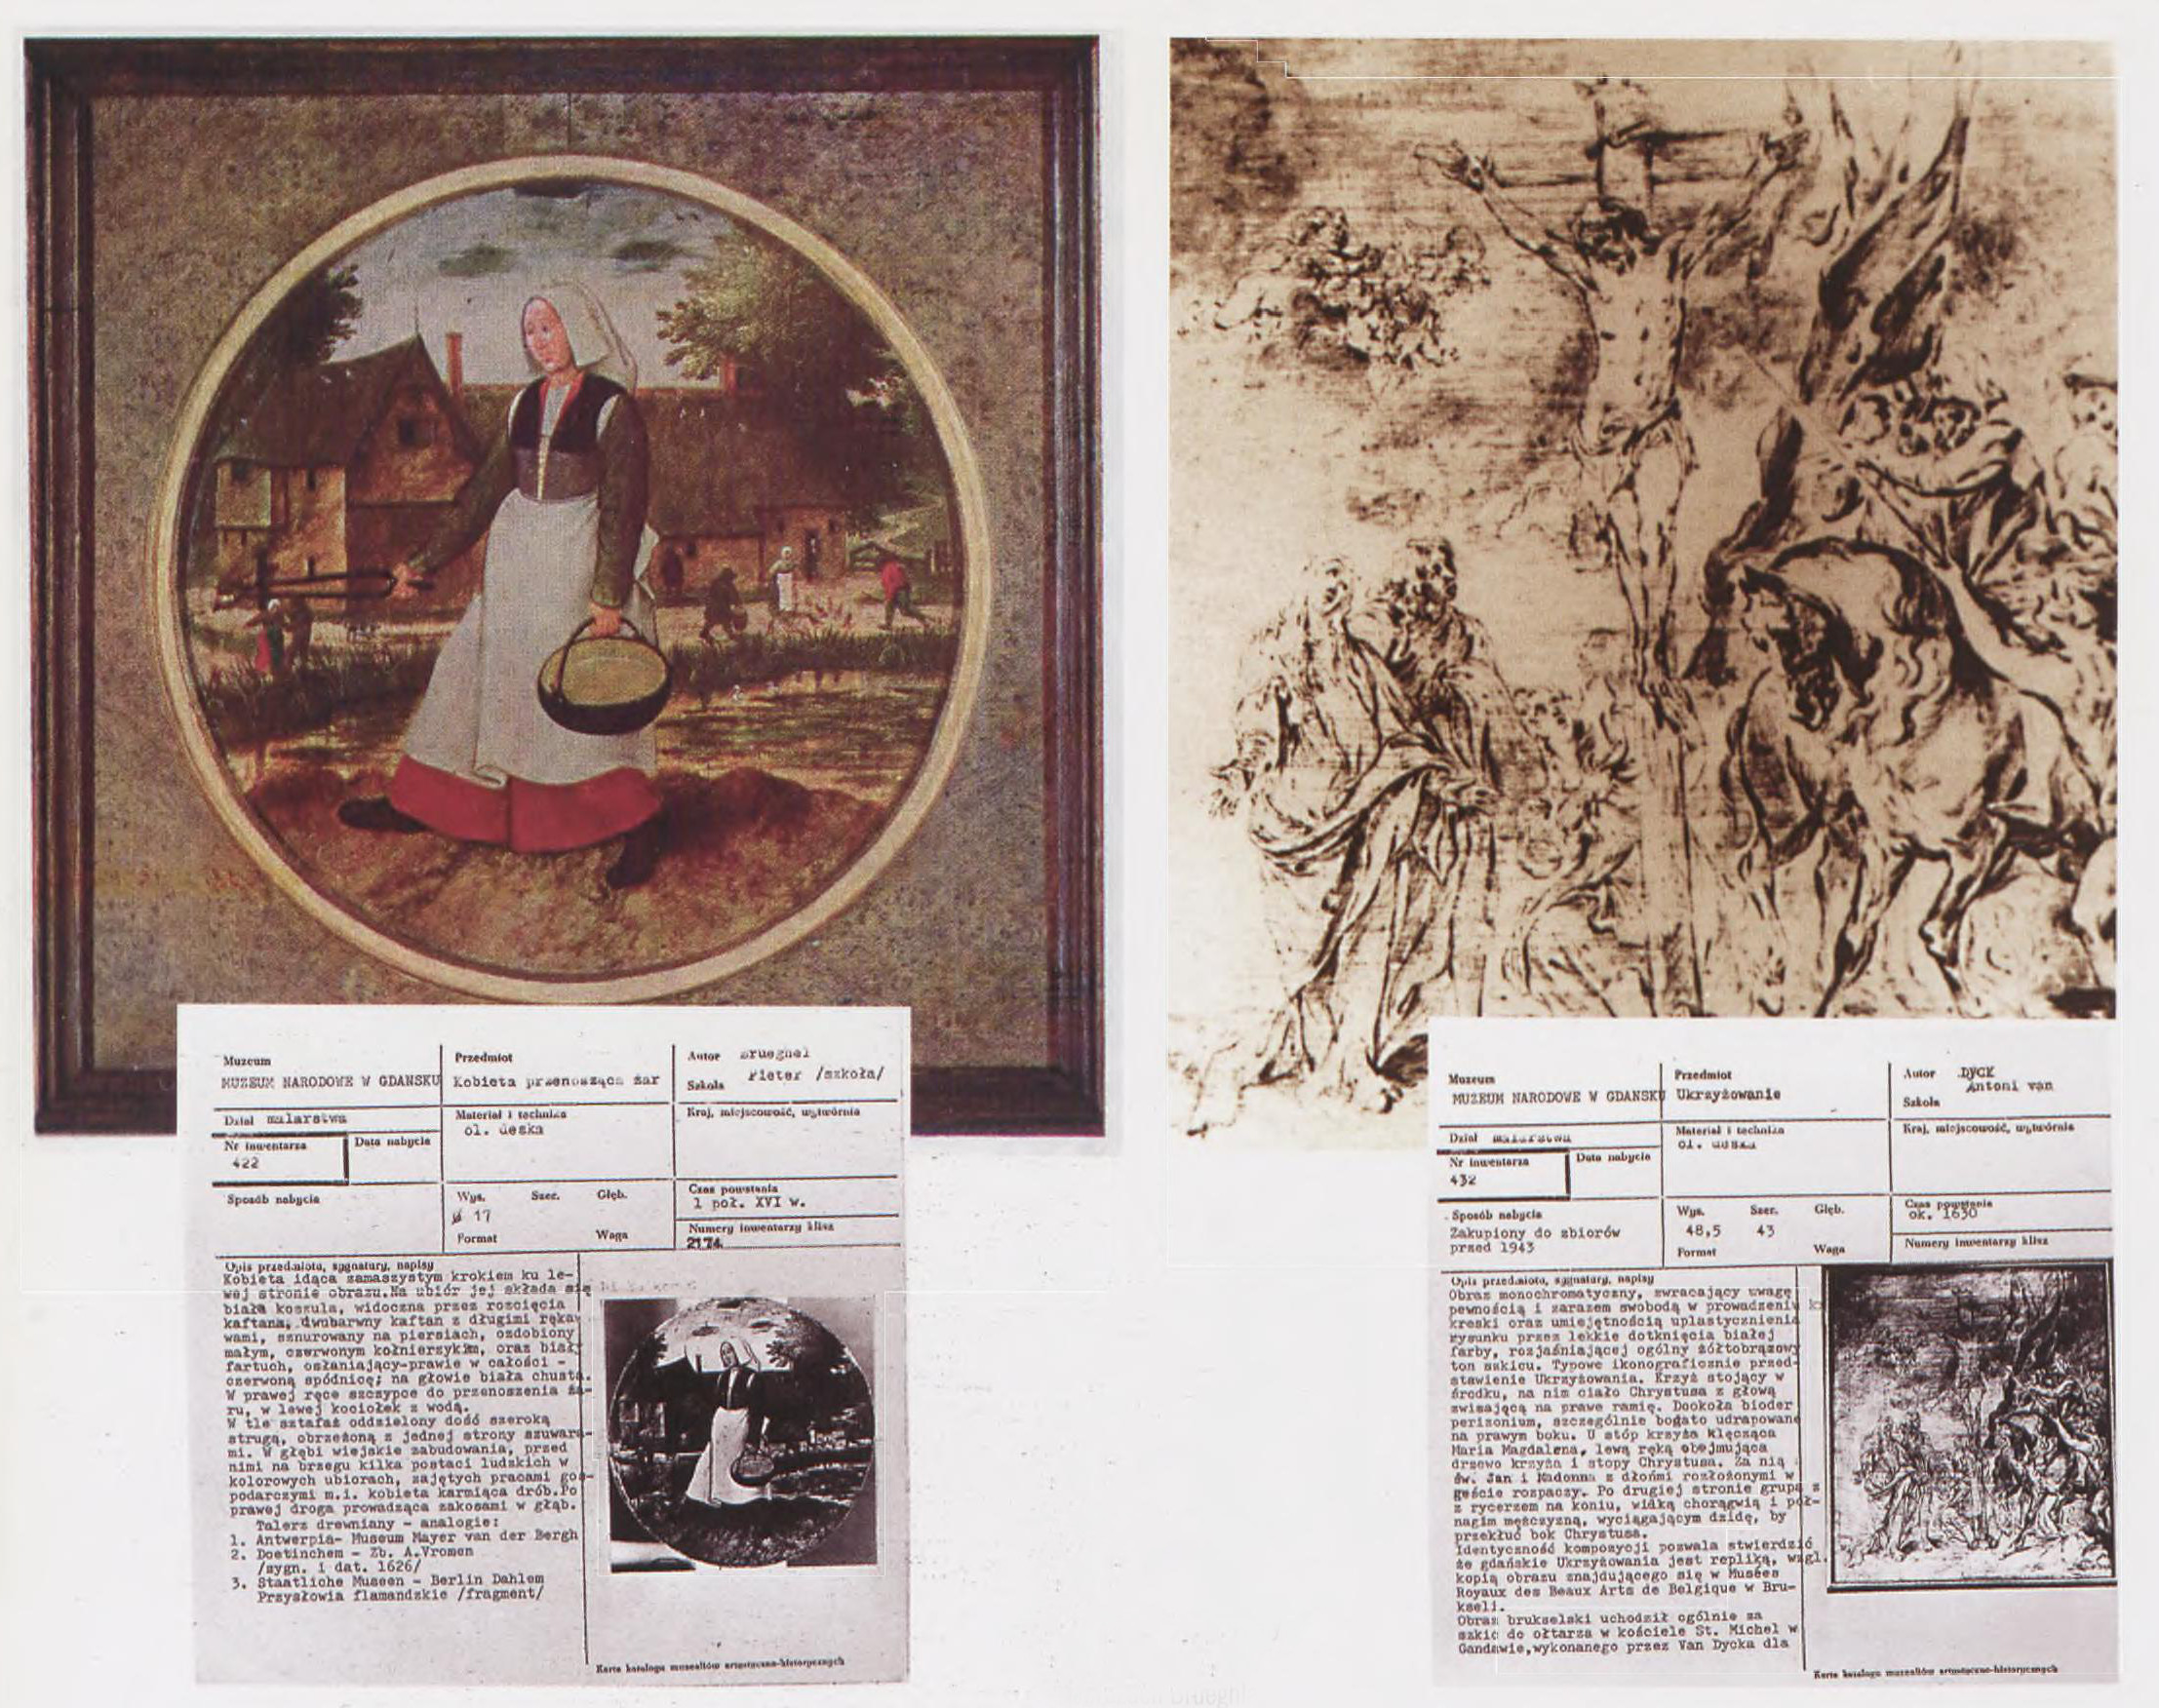 Karty muzealne pozostałe po skradzionych obrazach, źródło: "Cenne, bezcenne, utracone",  2008, Nr 4 (57)